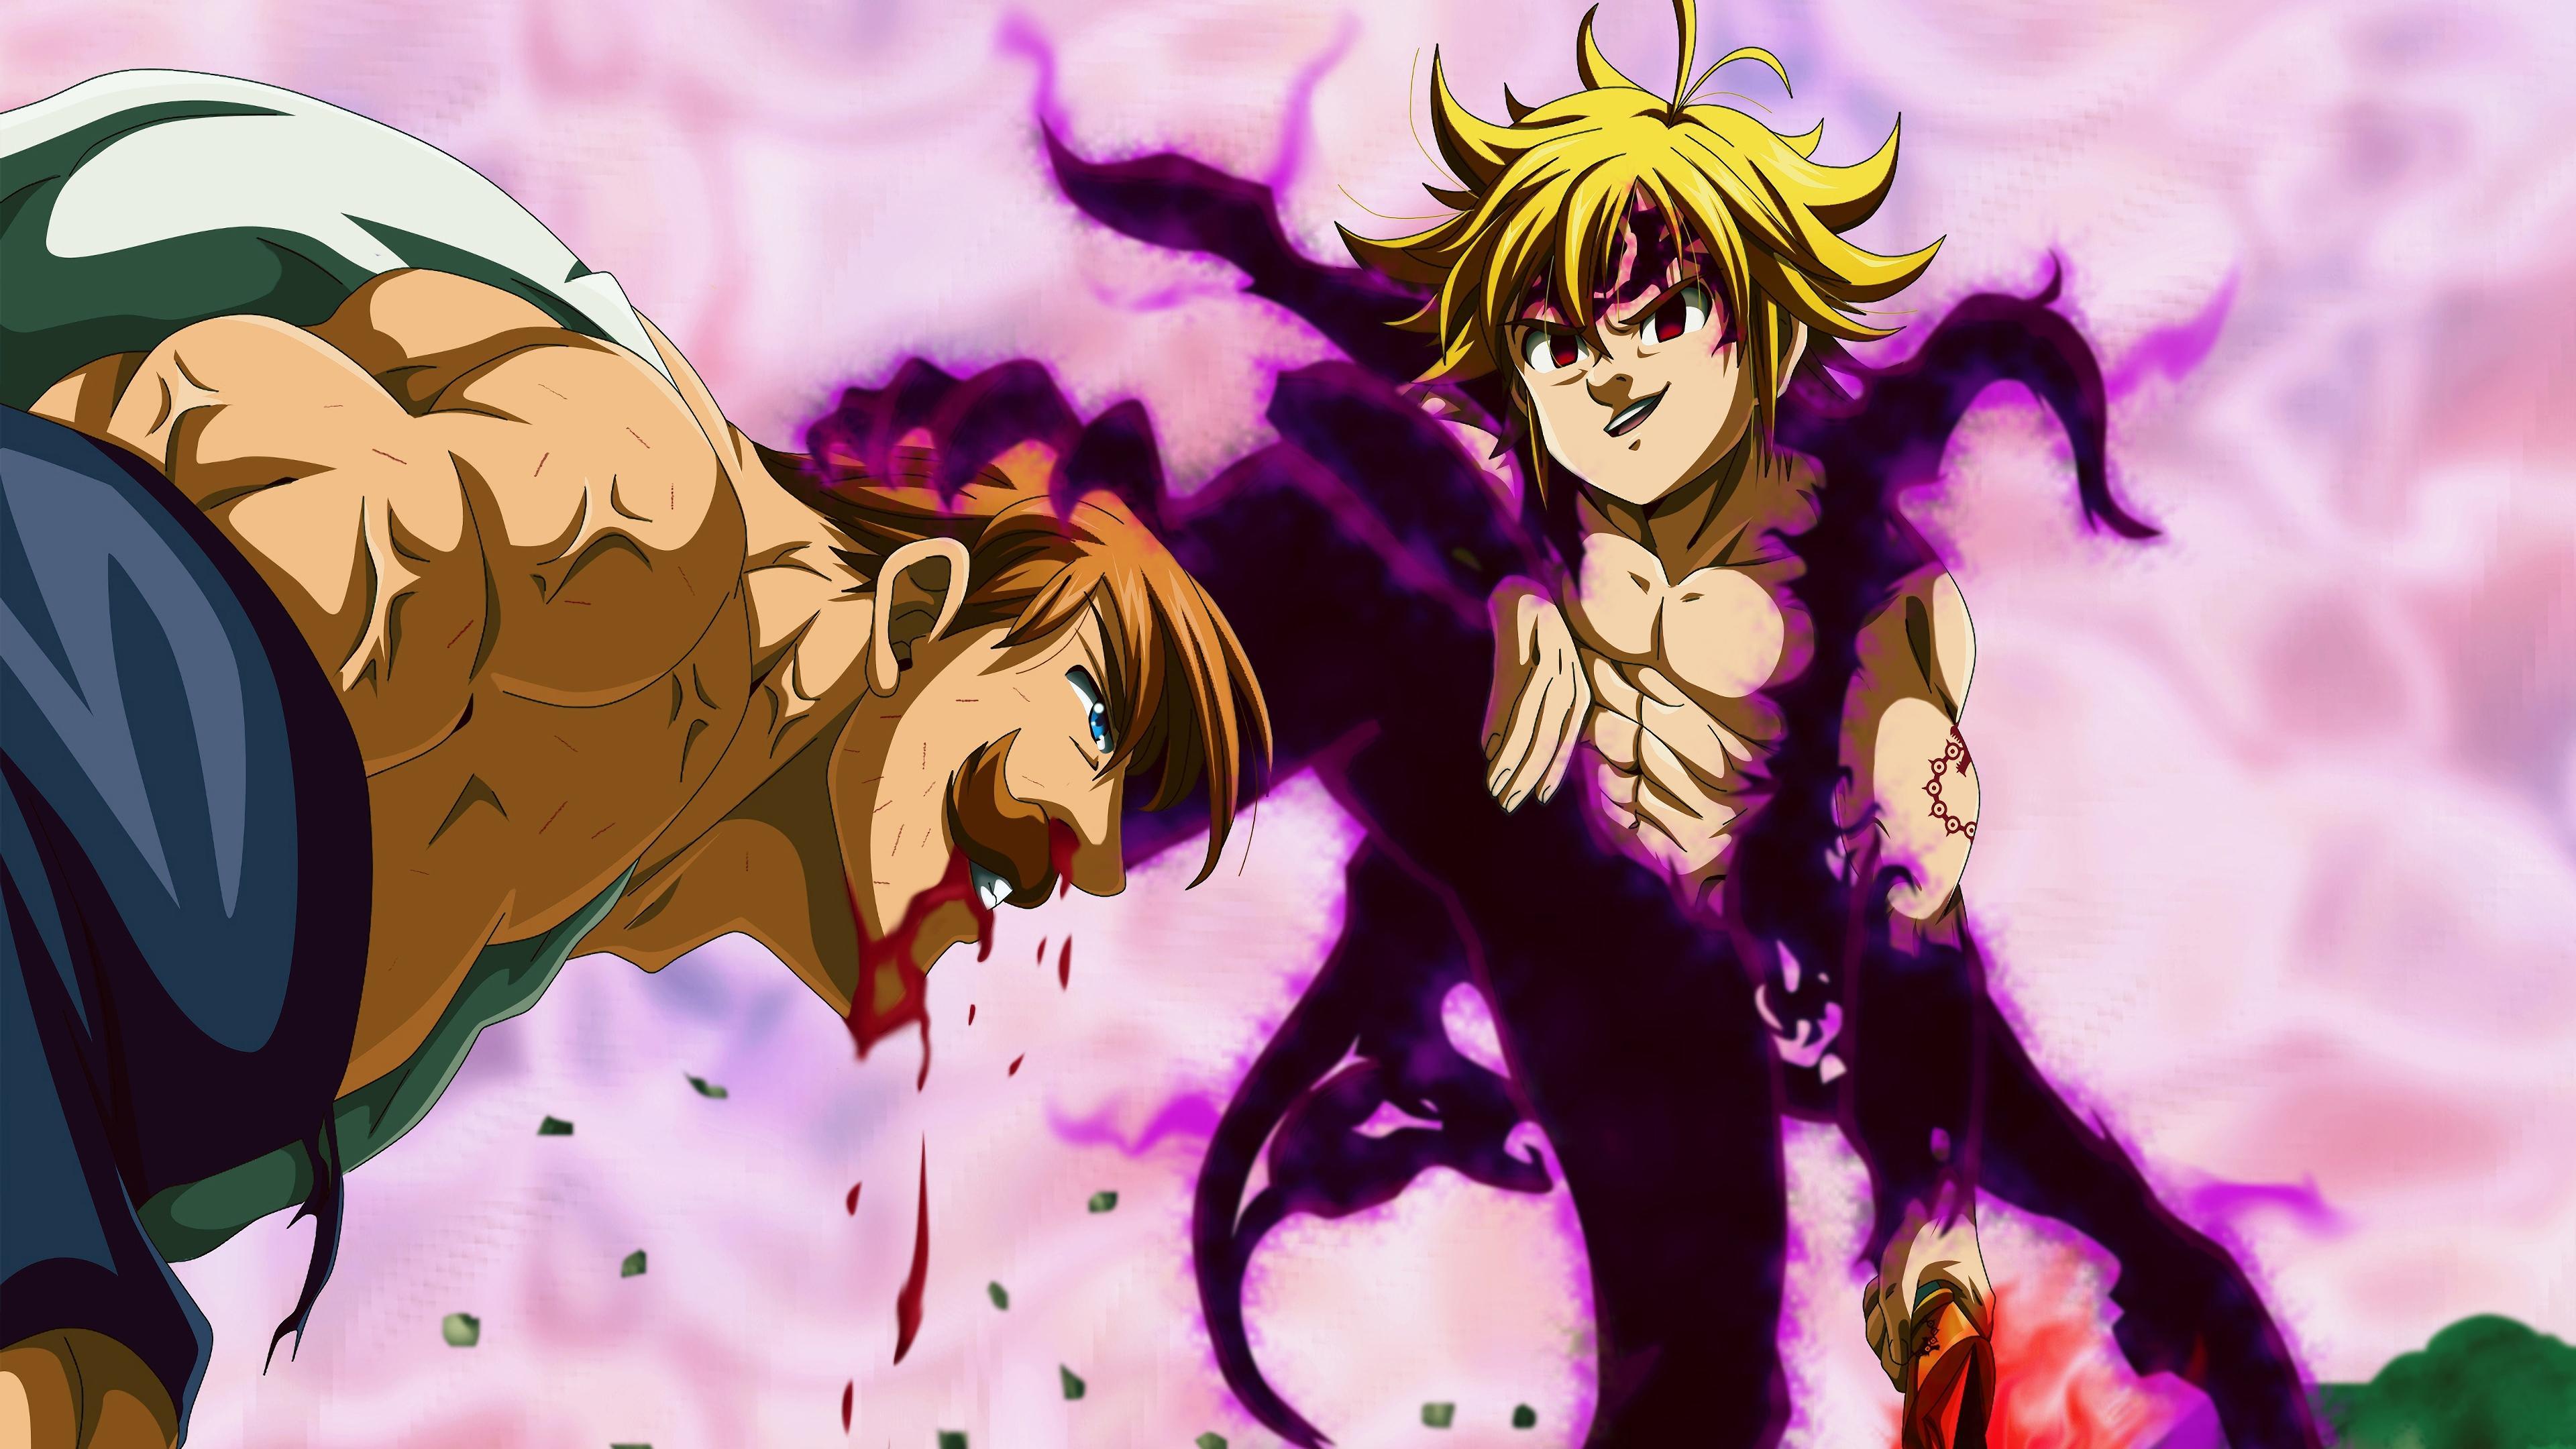 Scene from Seven Deadly Sins Anime Wallpaper 4k Ultra HD